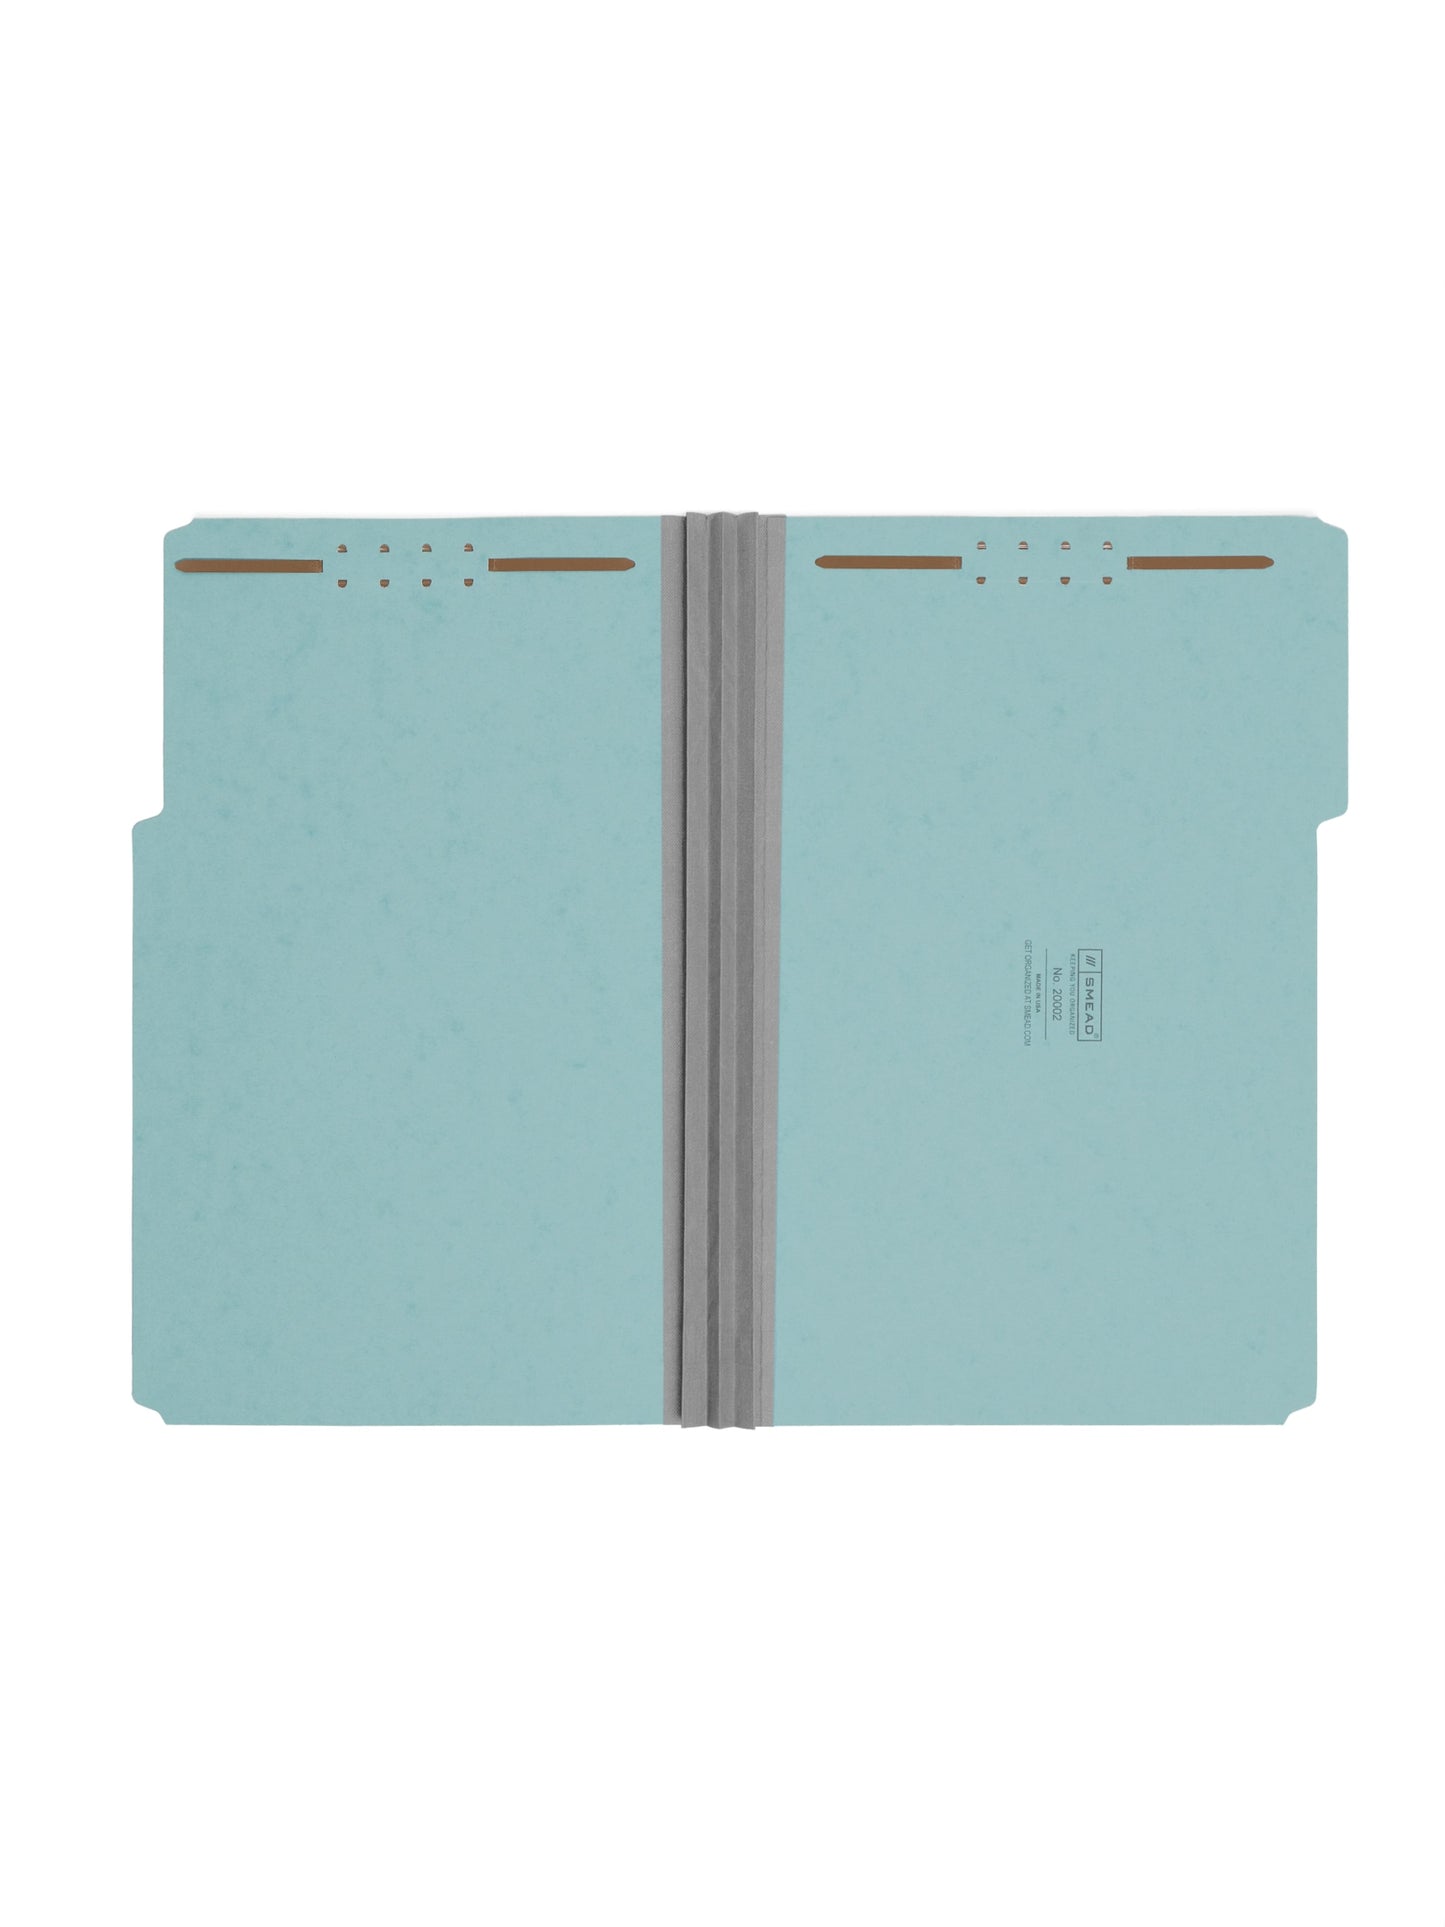 Pressboard Fastener File Folders, 3 inch Expansion, Blue Color, Legal Size, Set of 25, 086486200028